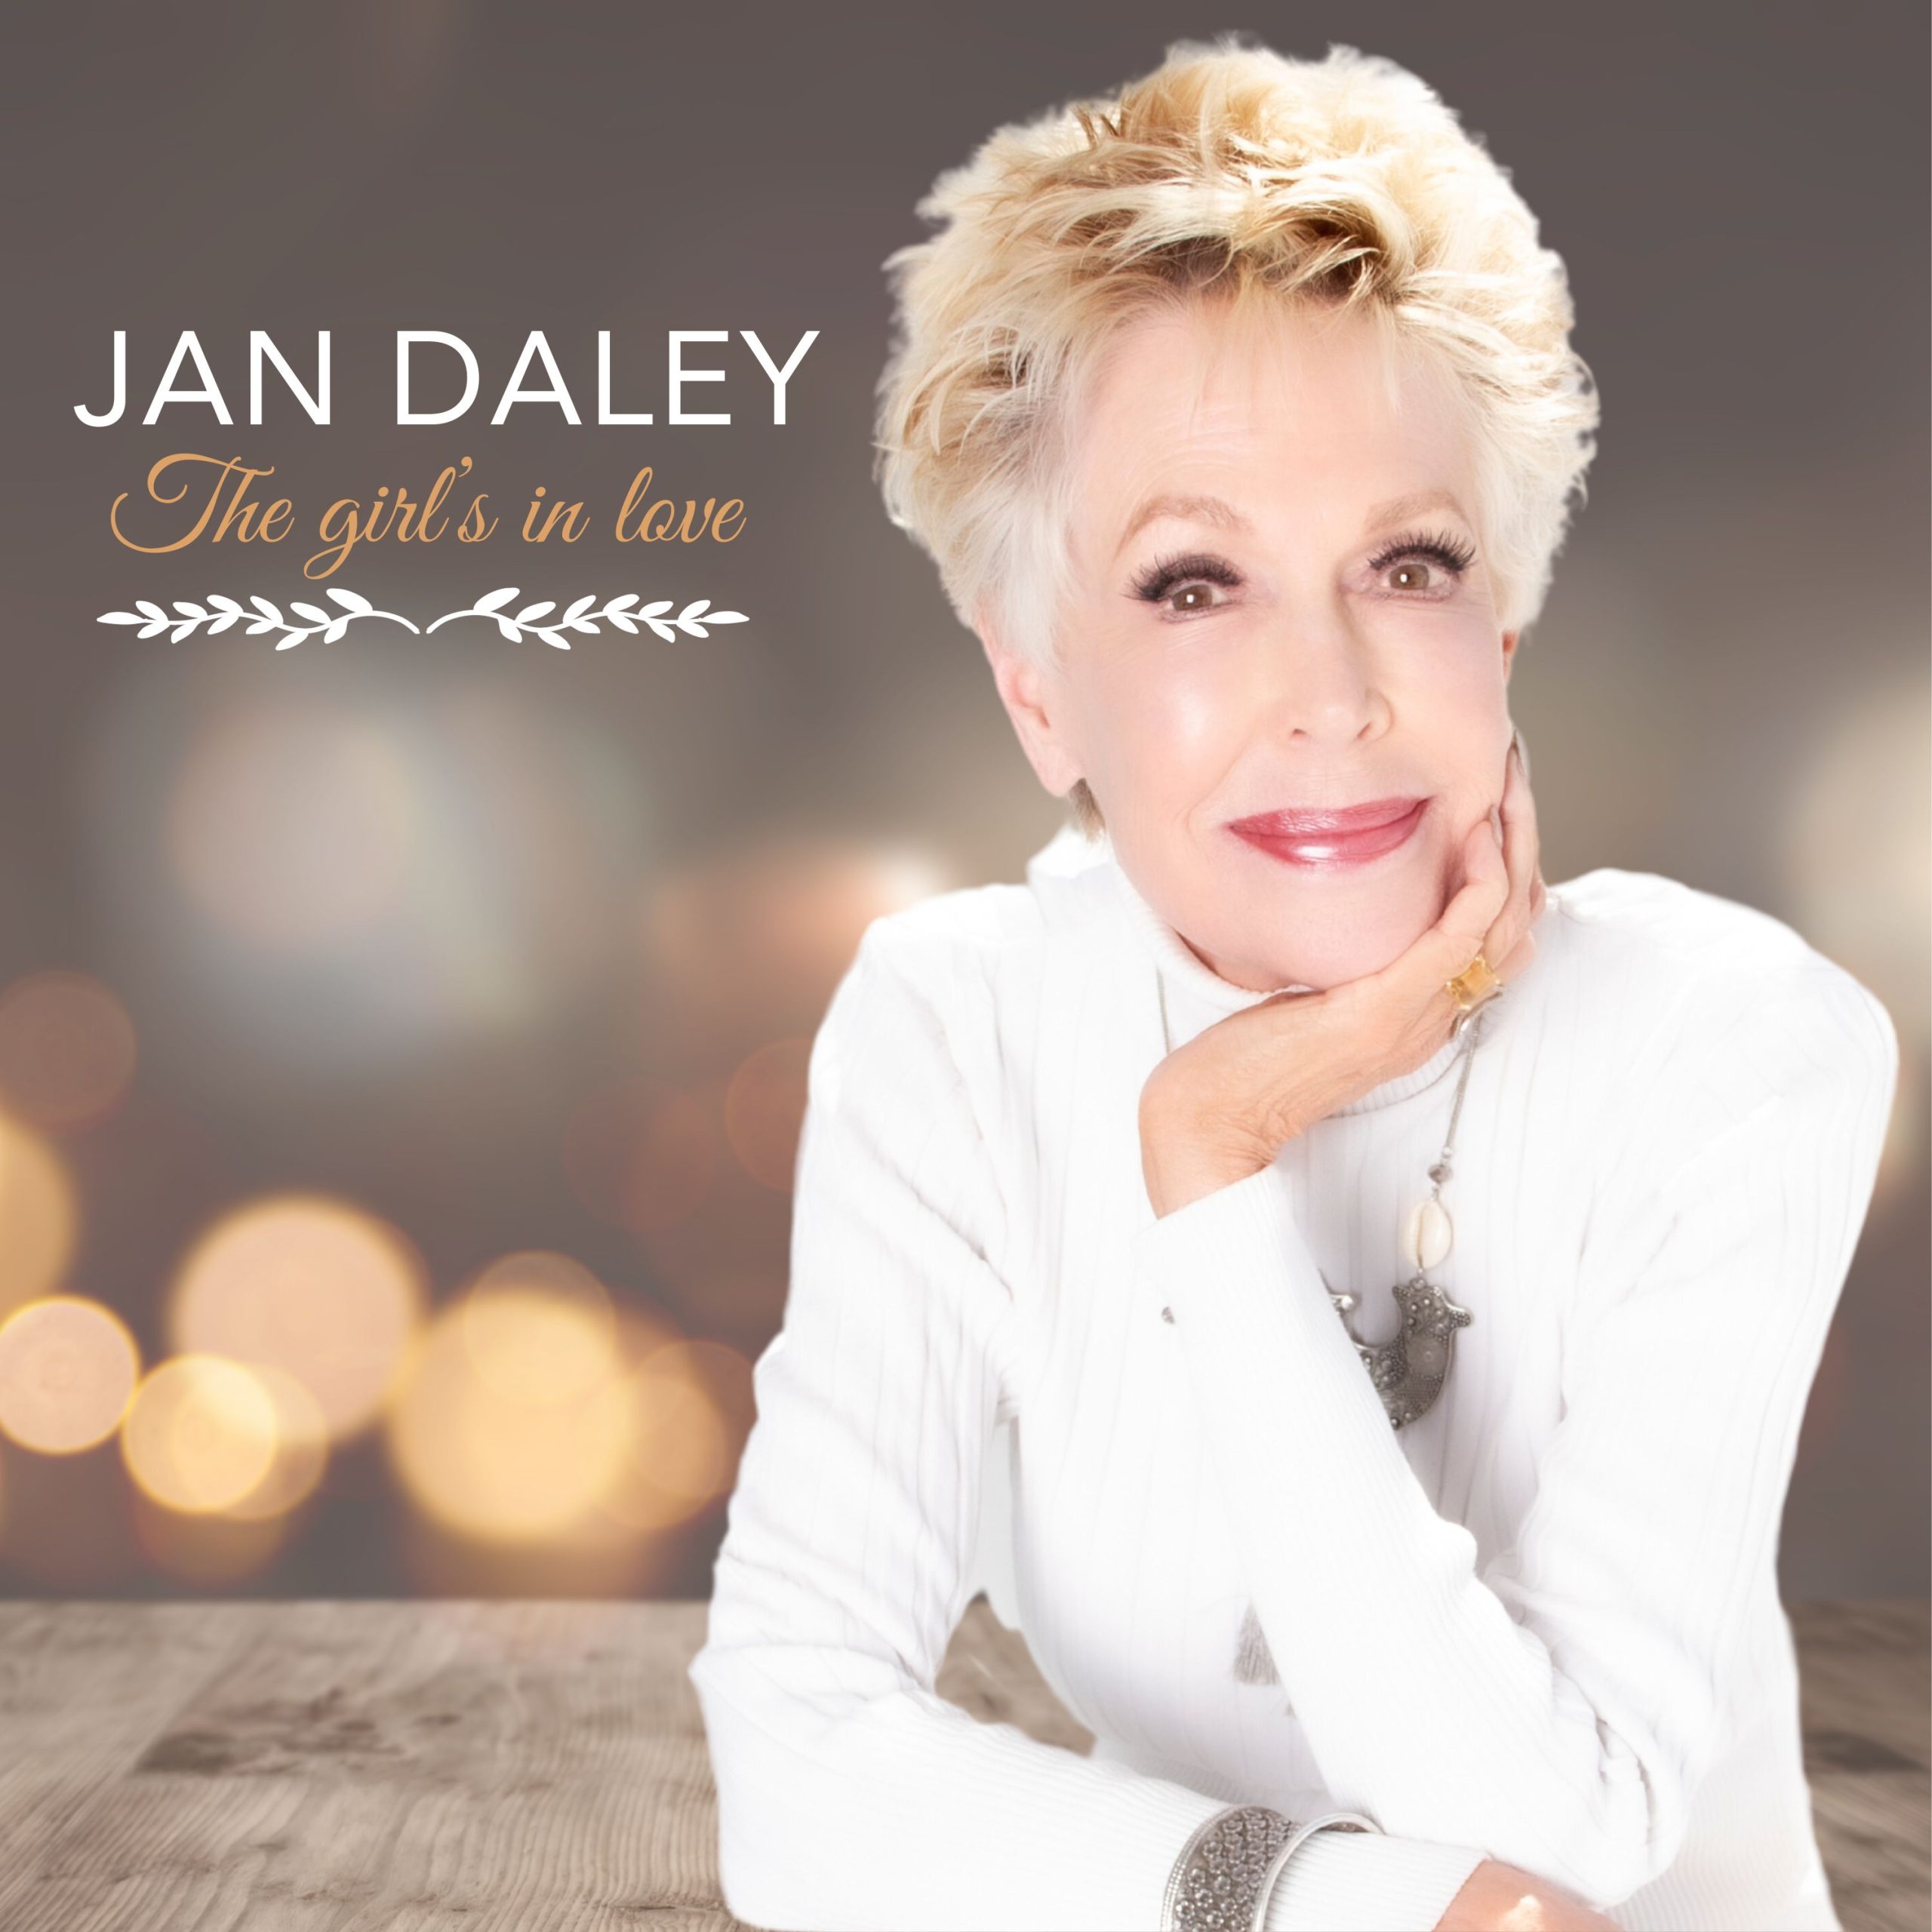 JAN DALEY – The girl’s in love – CD COVER (3000 × 3000 px)